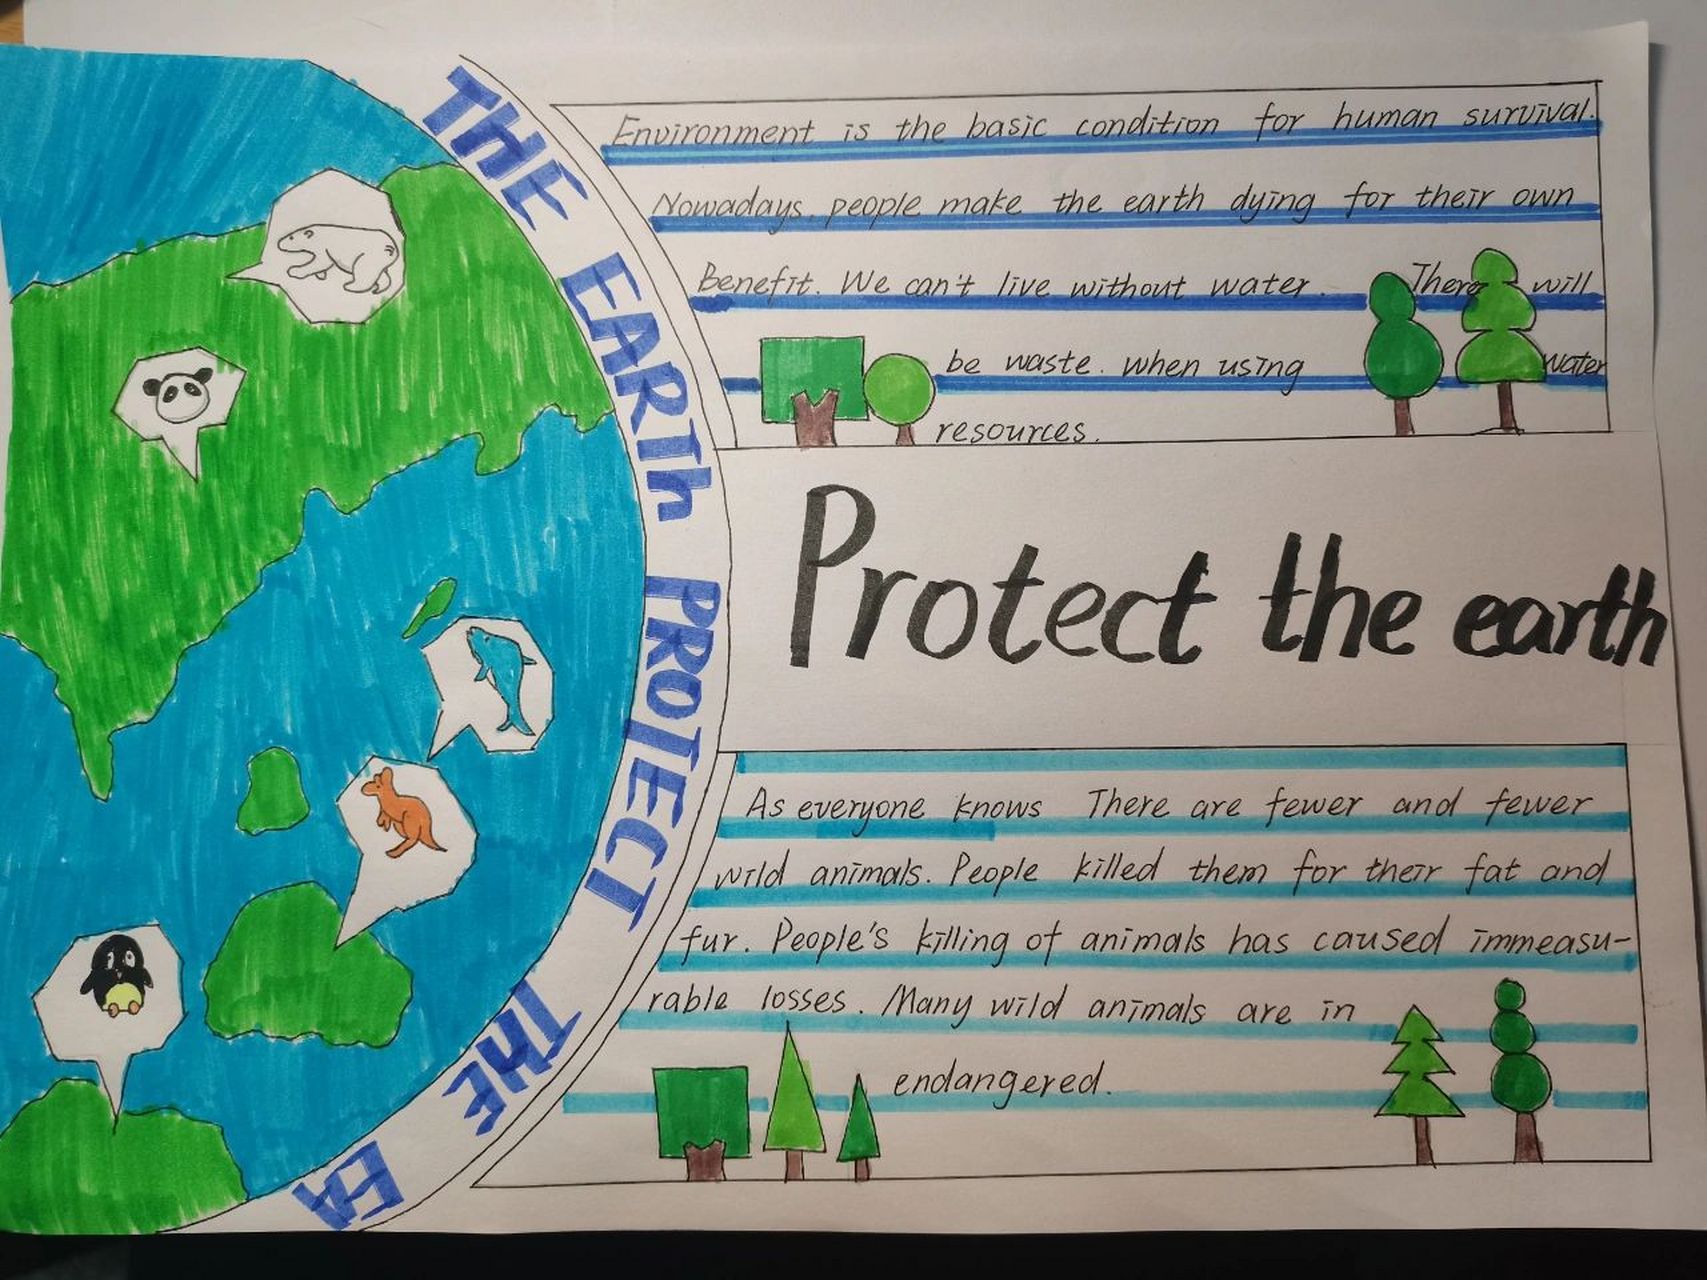 保护环境英语手抄报 保护环境,保护地球,就是保护人类自己